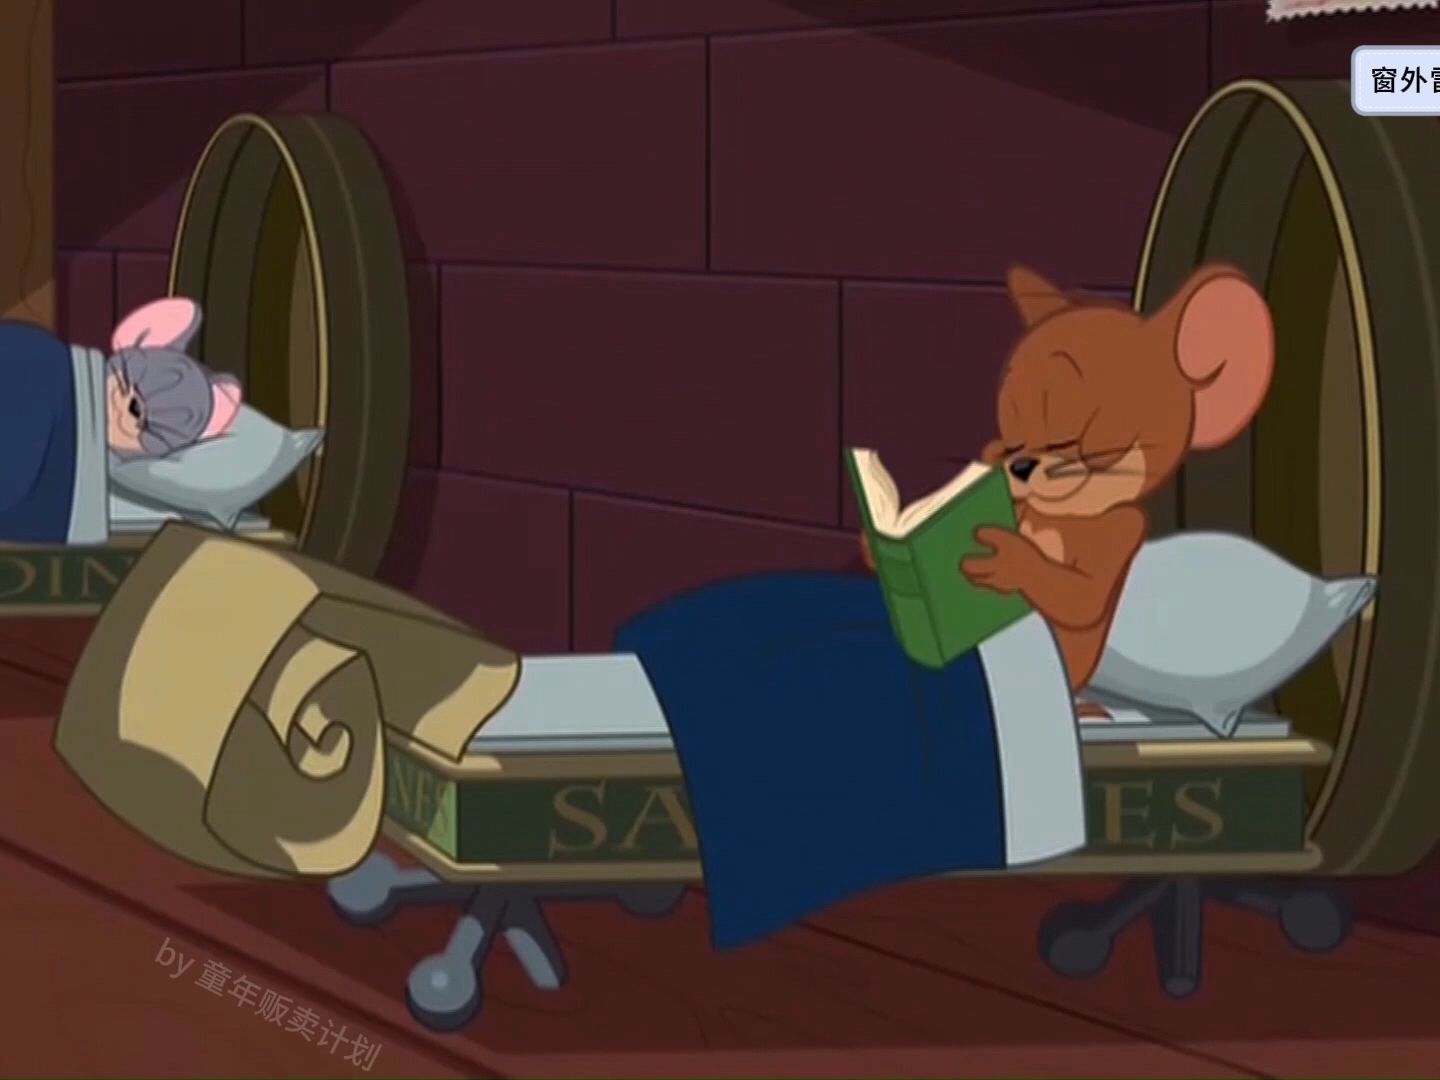 【氛围】爵士乐+窗外雷雨-杰瑞靠在舒服的罐头床上看书，泰菲在一旁睡觉；助眠/惬意/放松；猫和老鼠：窗外雷雨声+爵士乐+翻书声